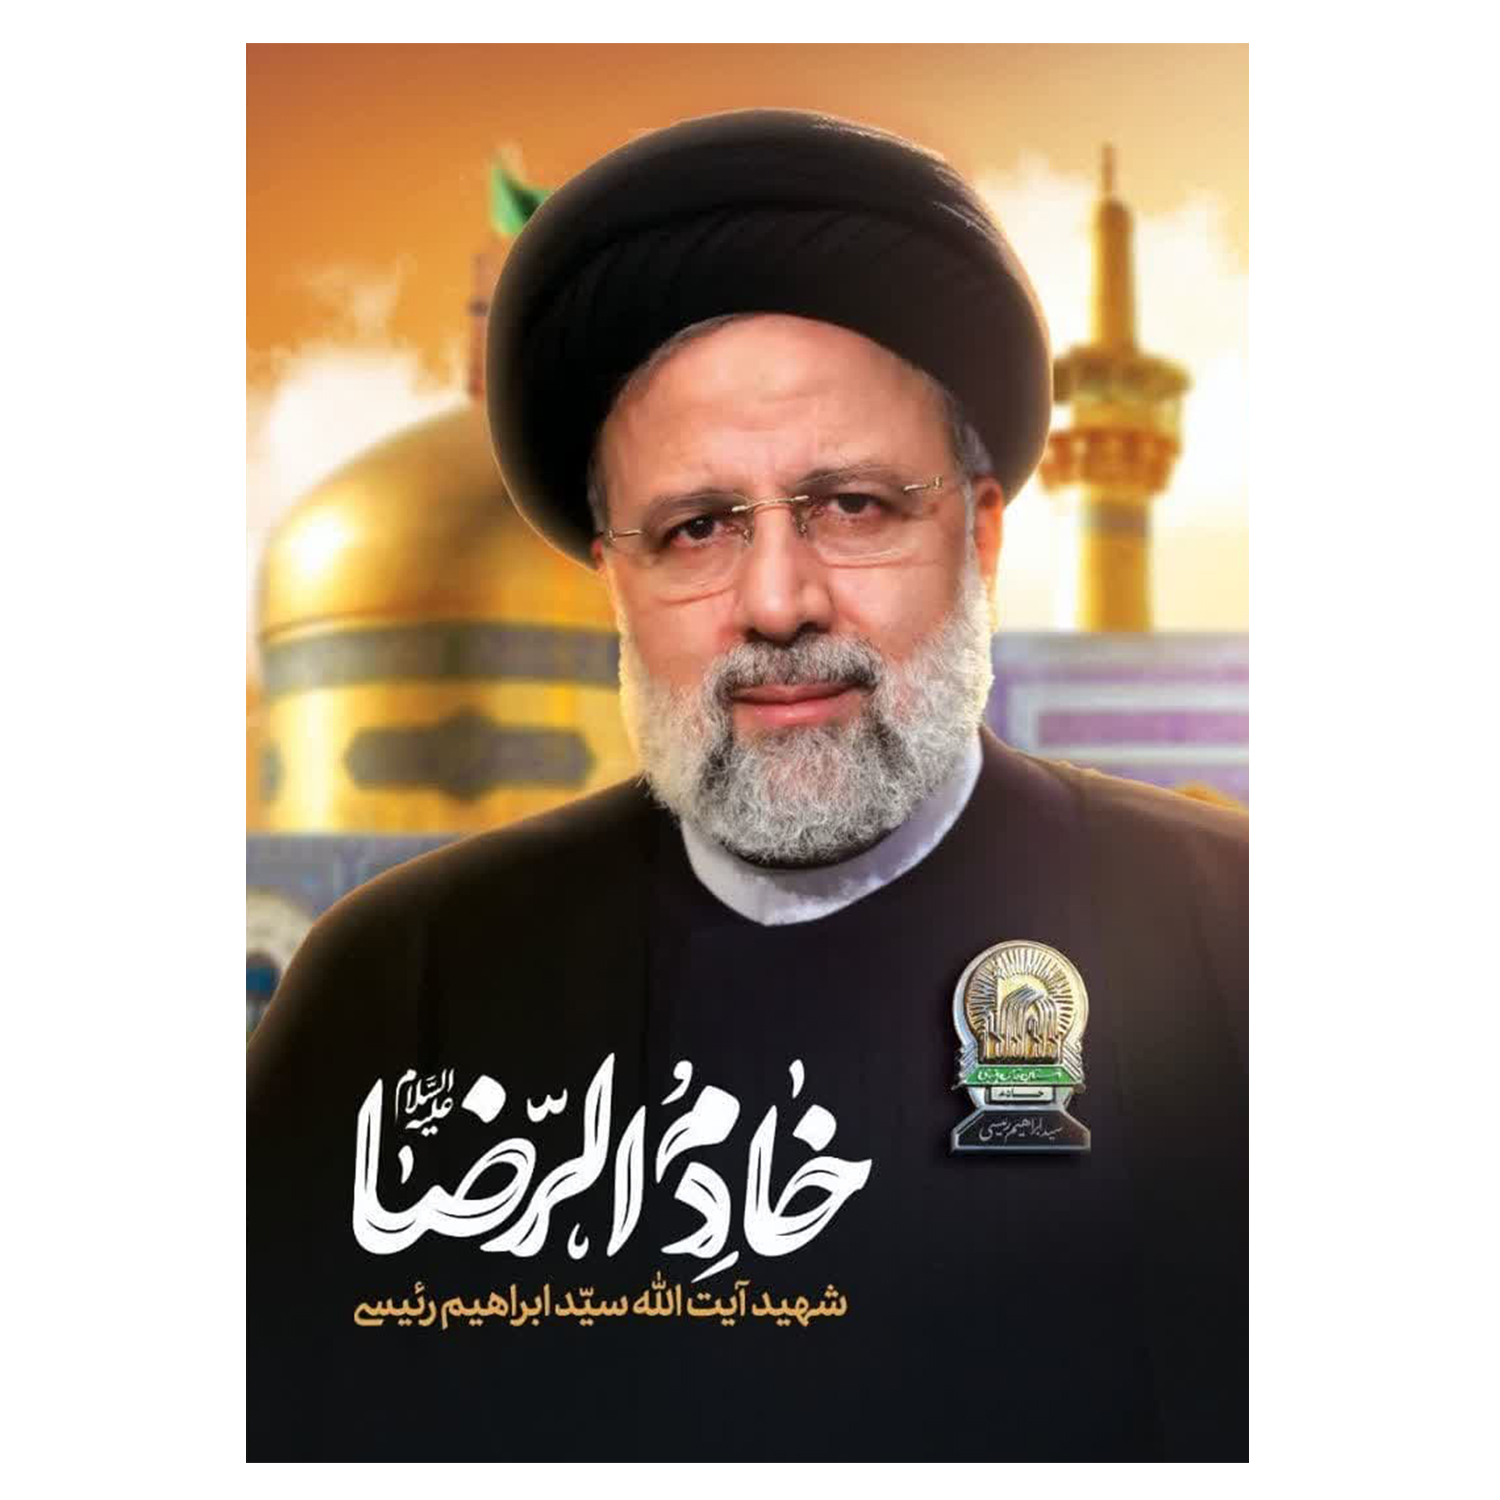 پرچم مدل رئیس جمهور طرح خادم الرضا شهید آیت الله سید ابراهیم رئیسی کد 103427